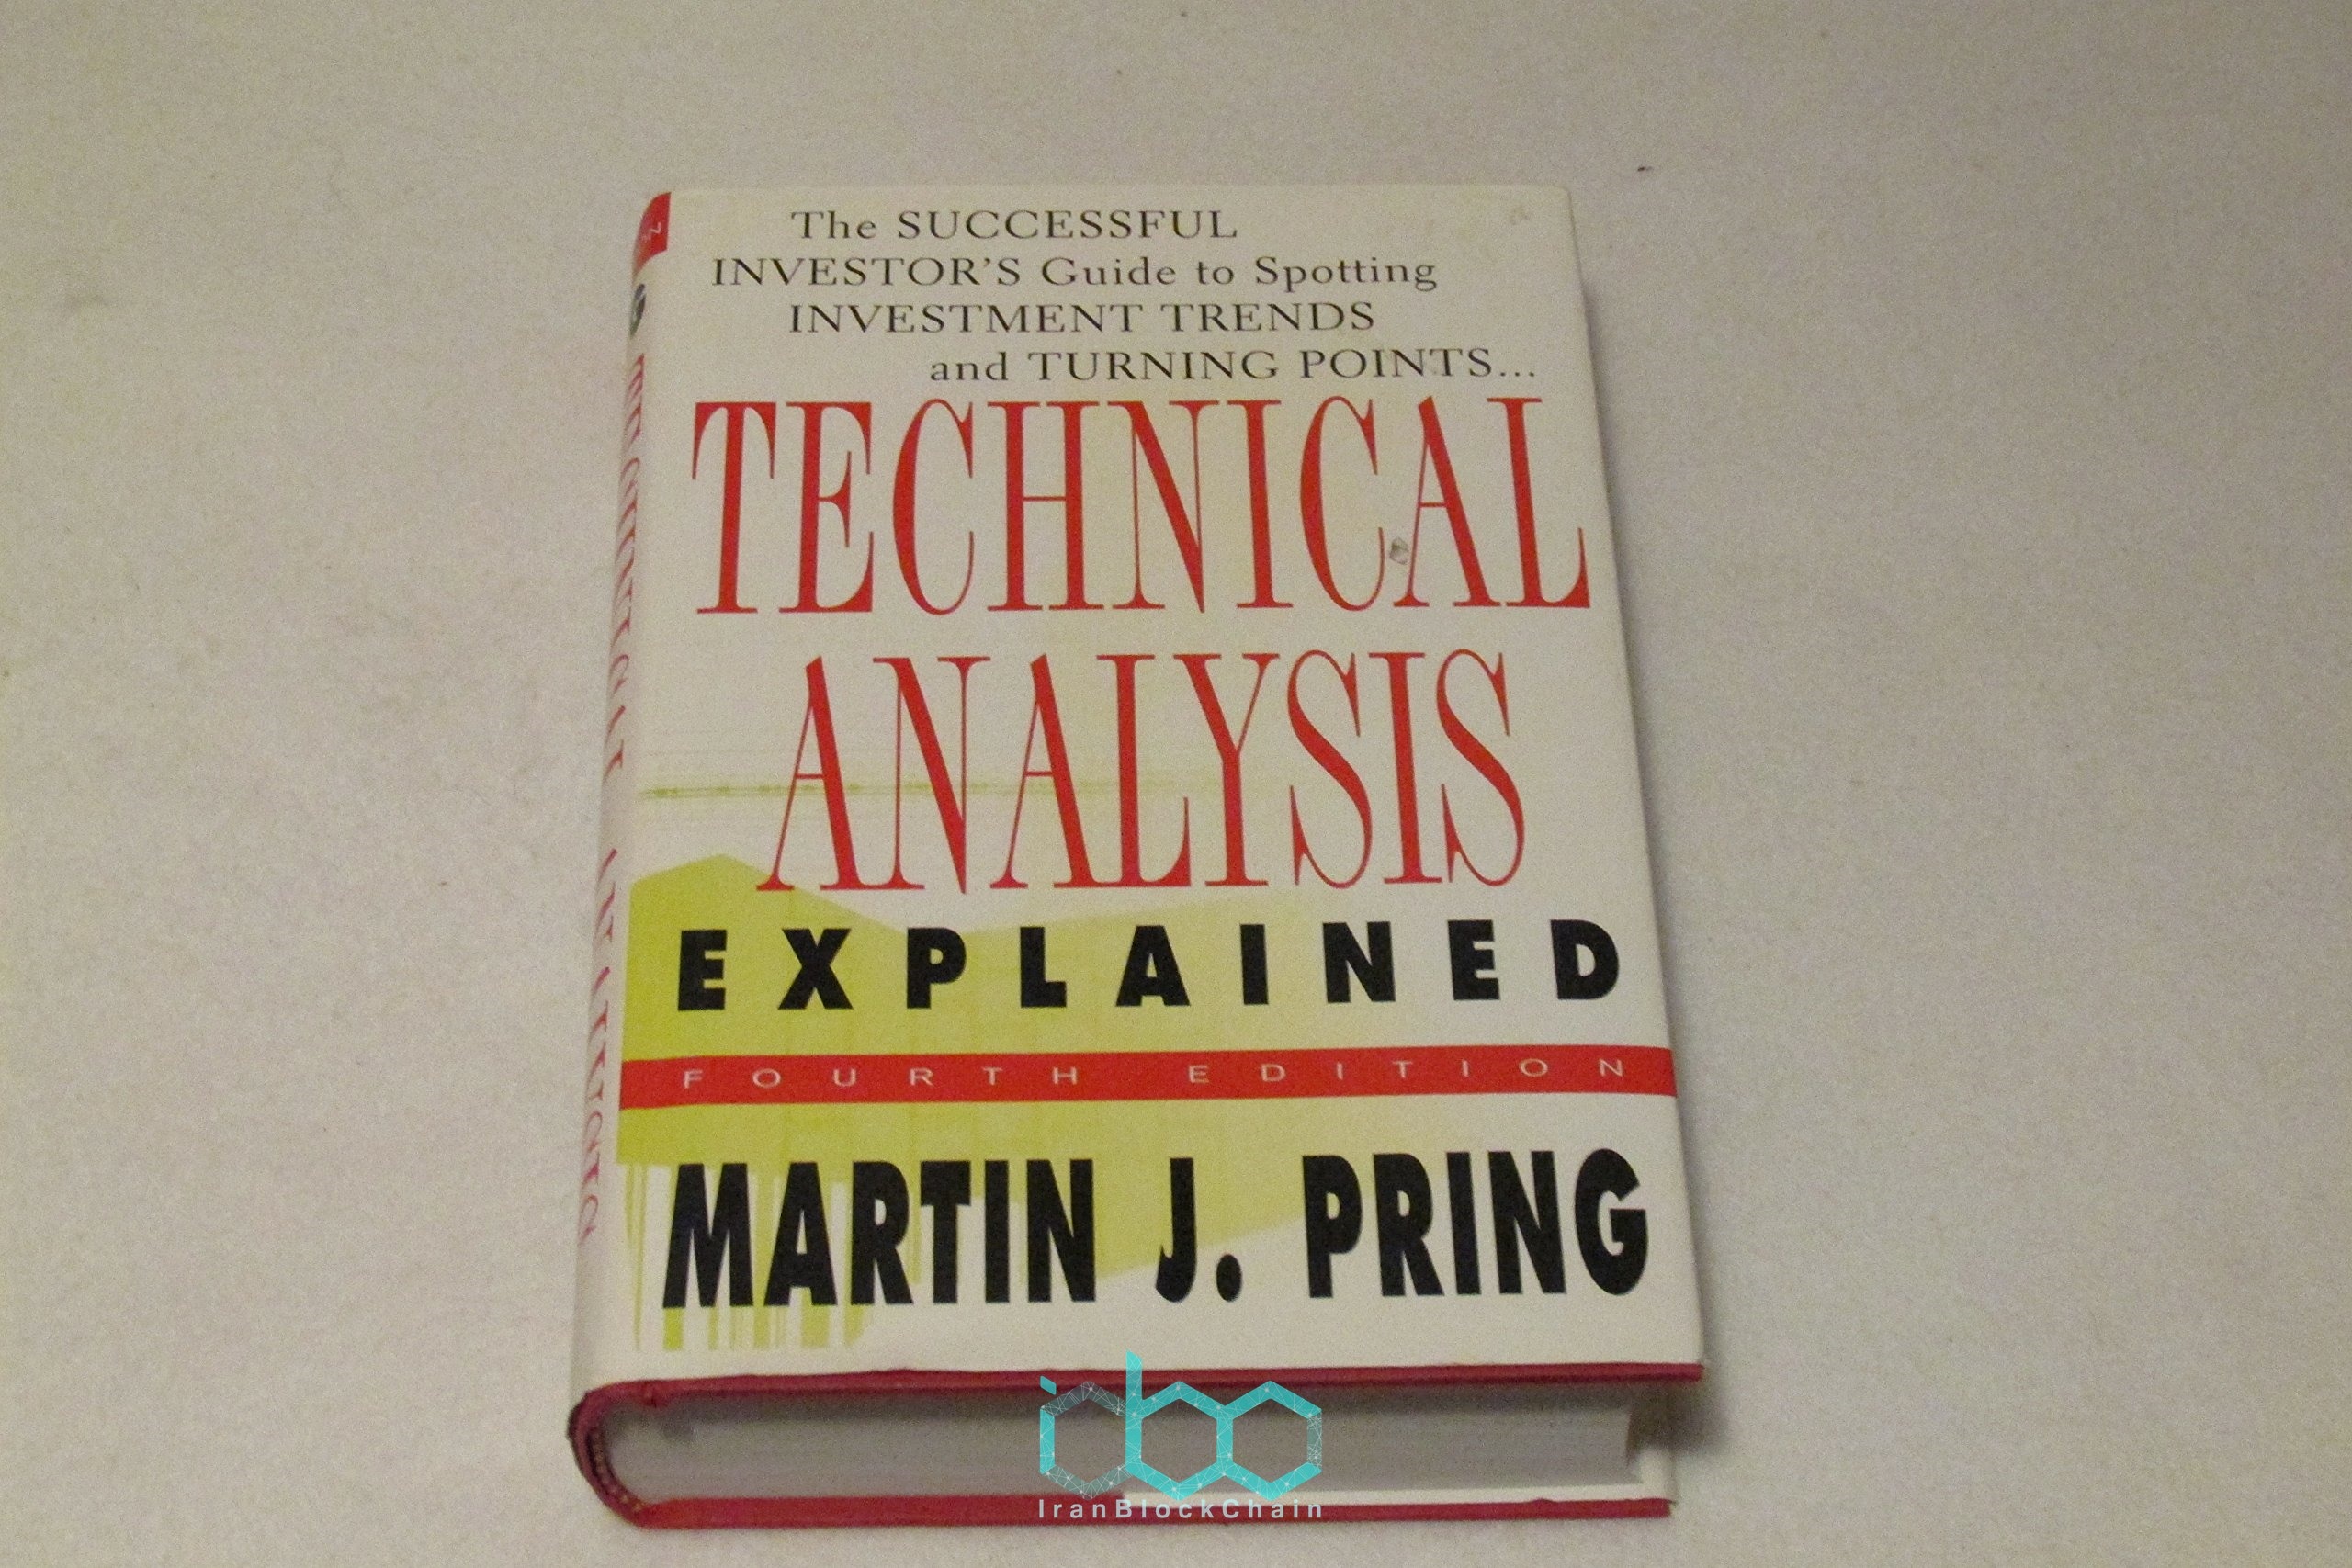 تحلیل تکنیکال توضیح داده شده توسط مارتین پینگ